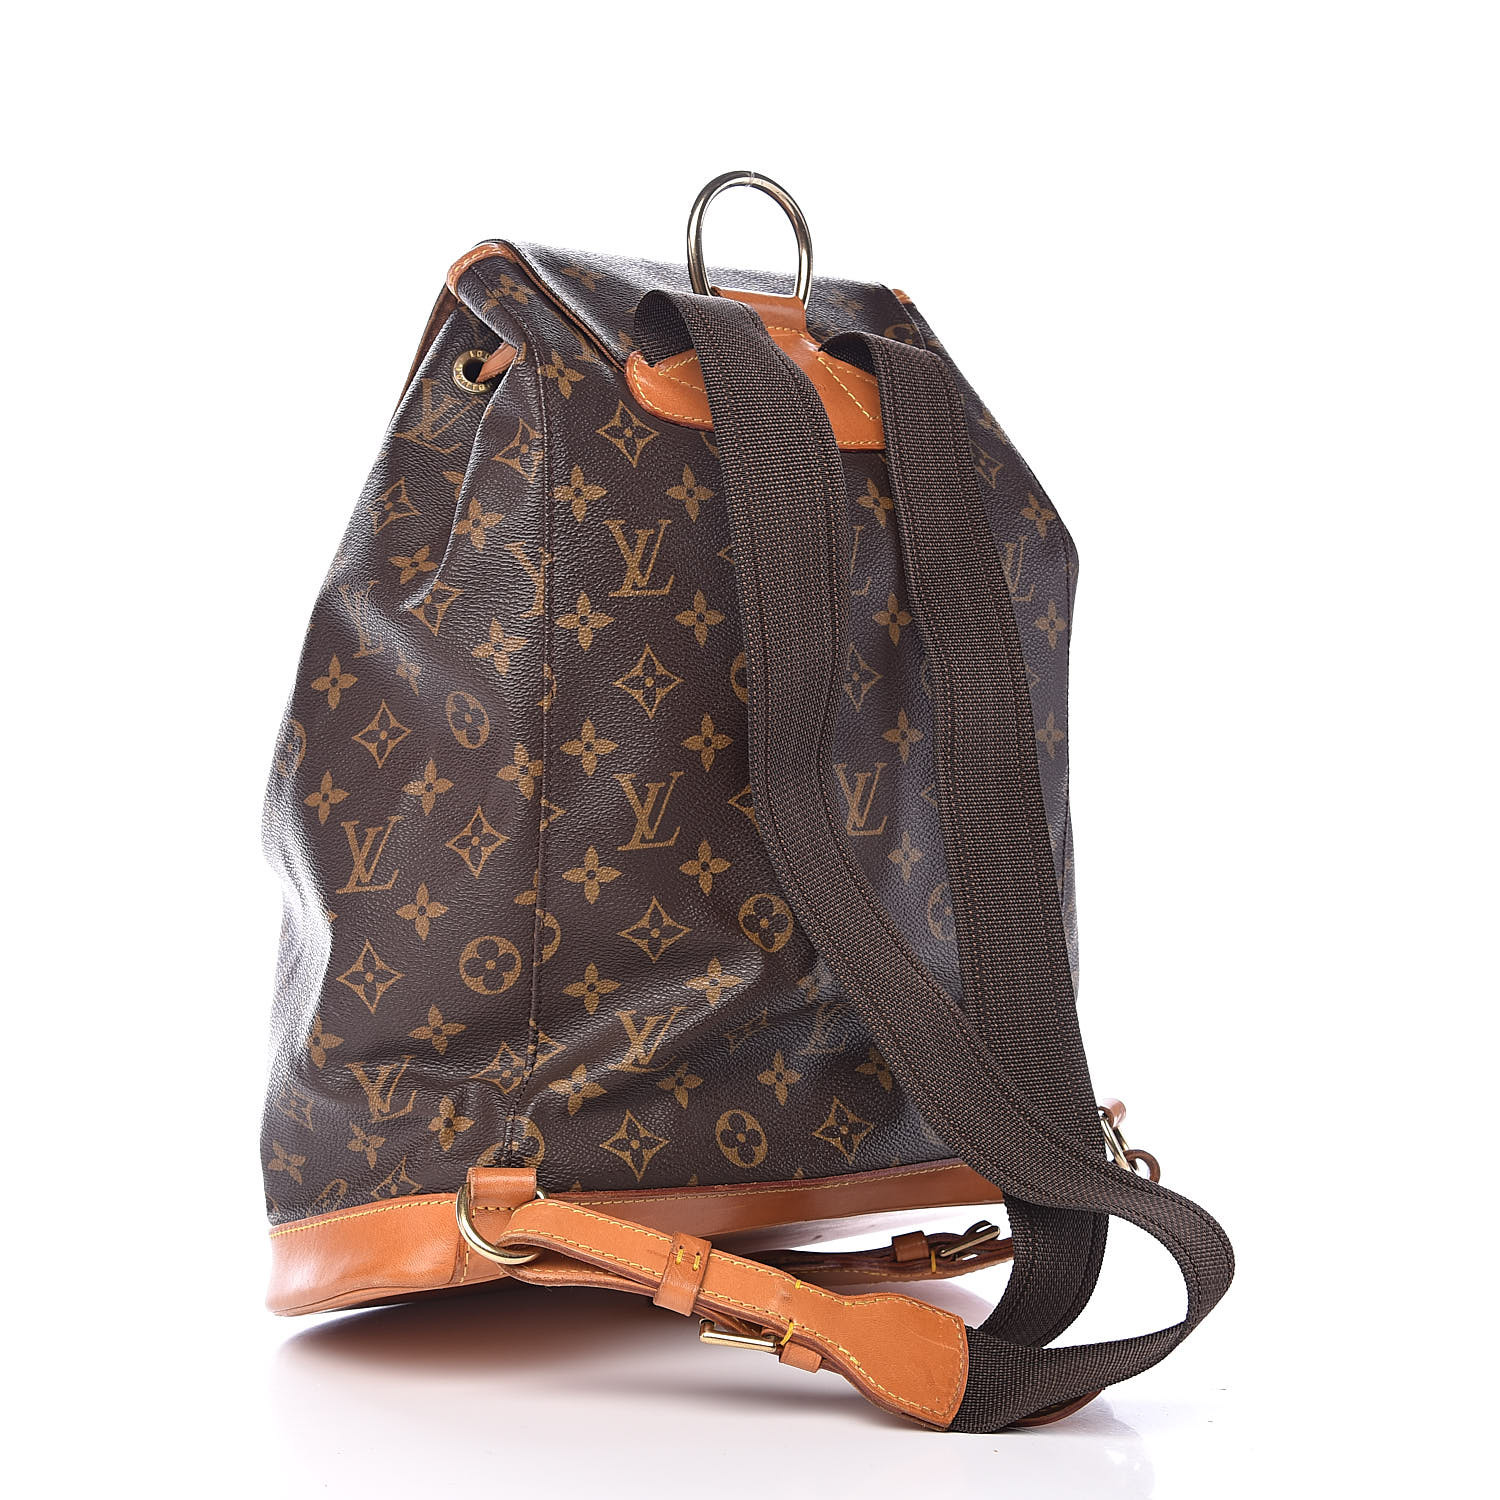 Louis Vuitton, Bags, Authentic Louis Vuitton Backpack Bag Montsouris Gm  Monogram Used Lv Handbag Vint